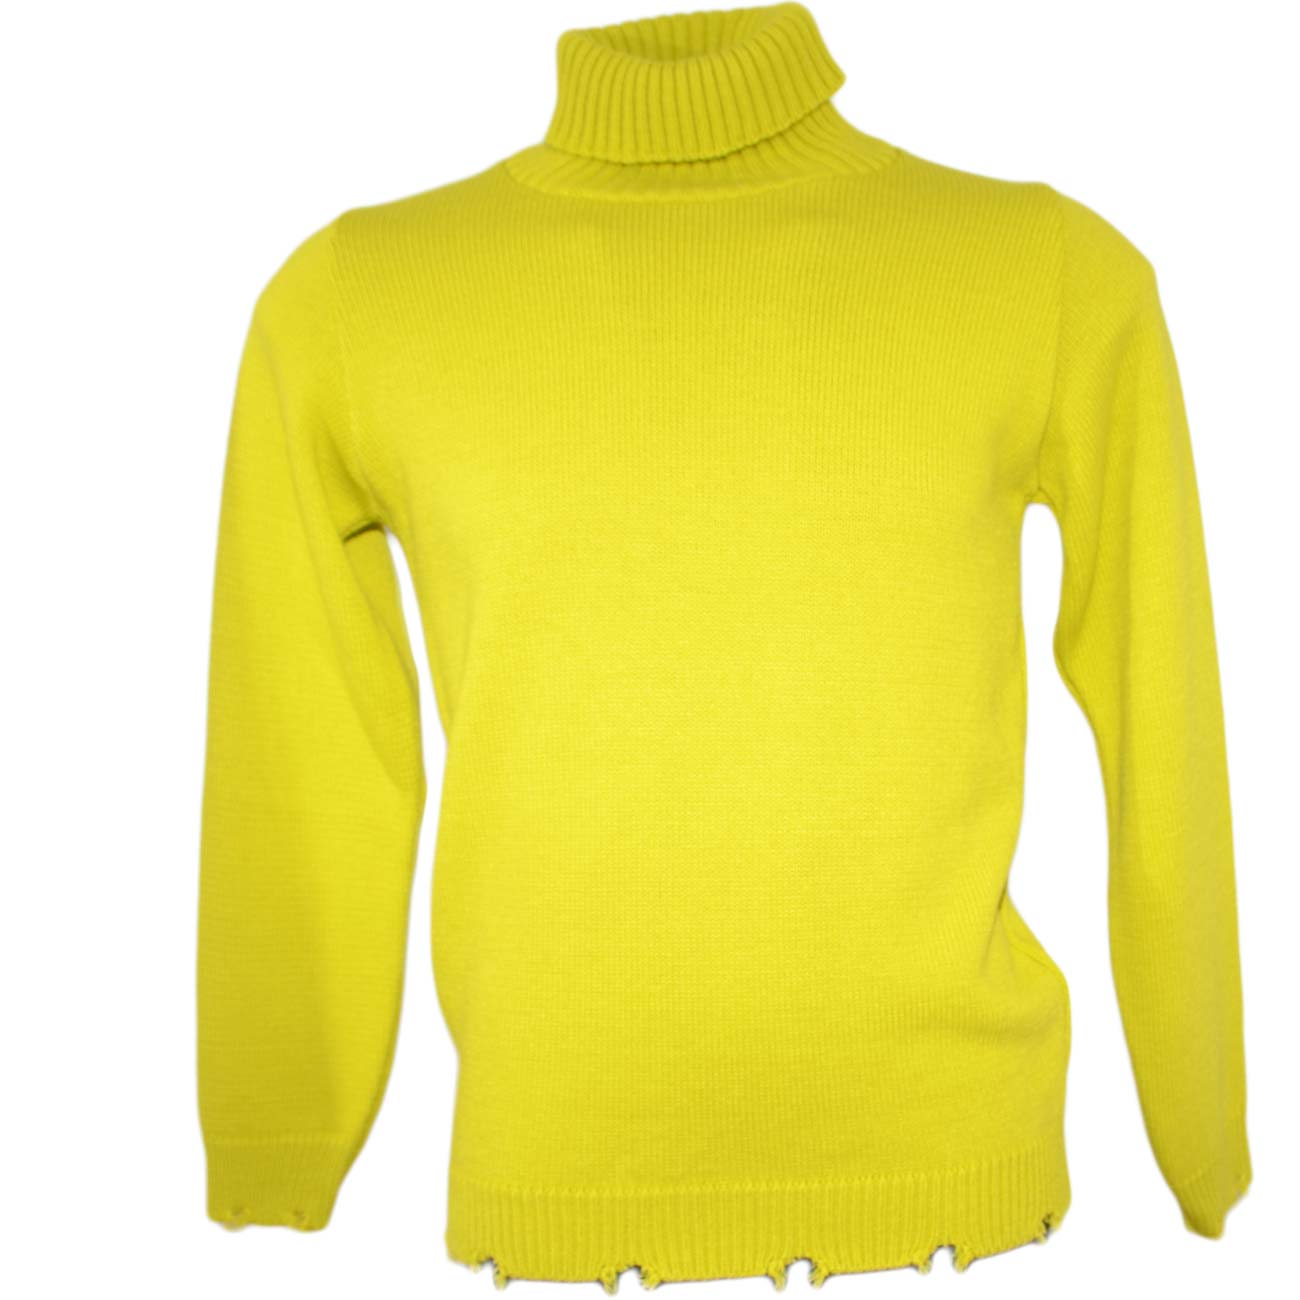 Maglione dolcevita uomo color giallo slim fit ad intessitura larga linea vintage con scuciture caldo e confortevole